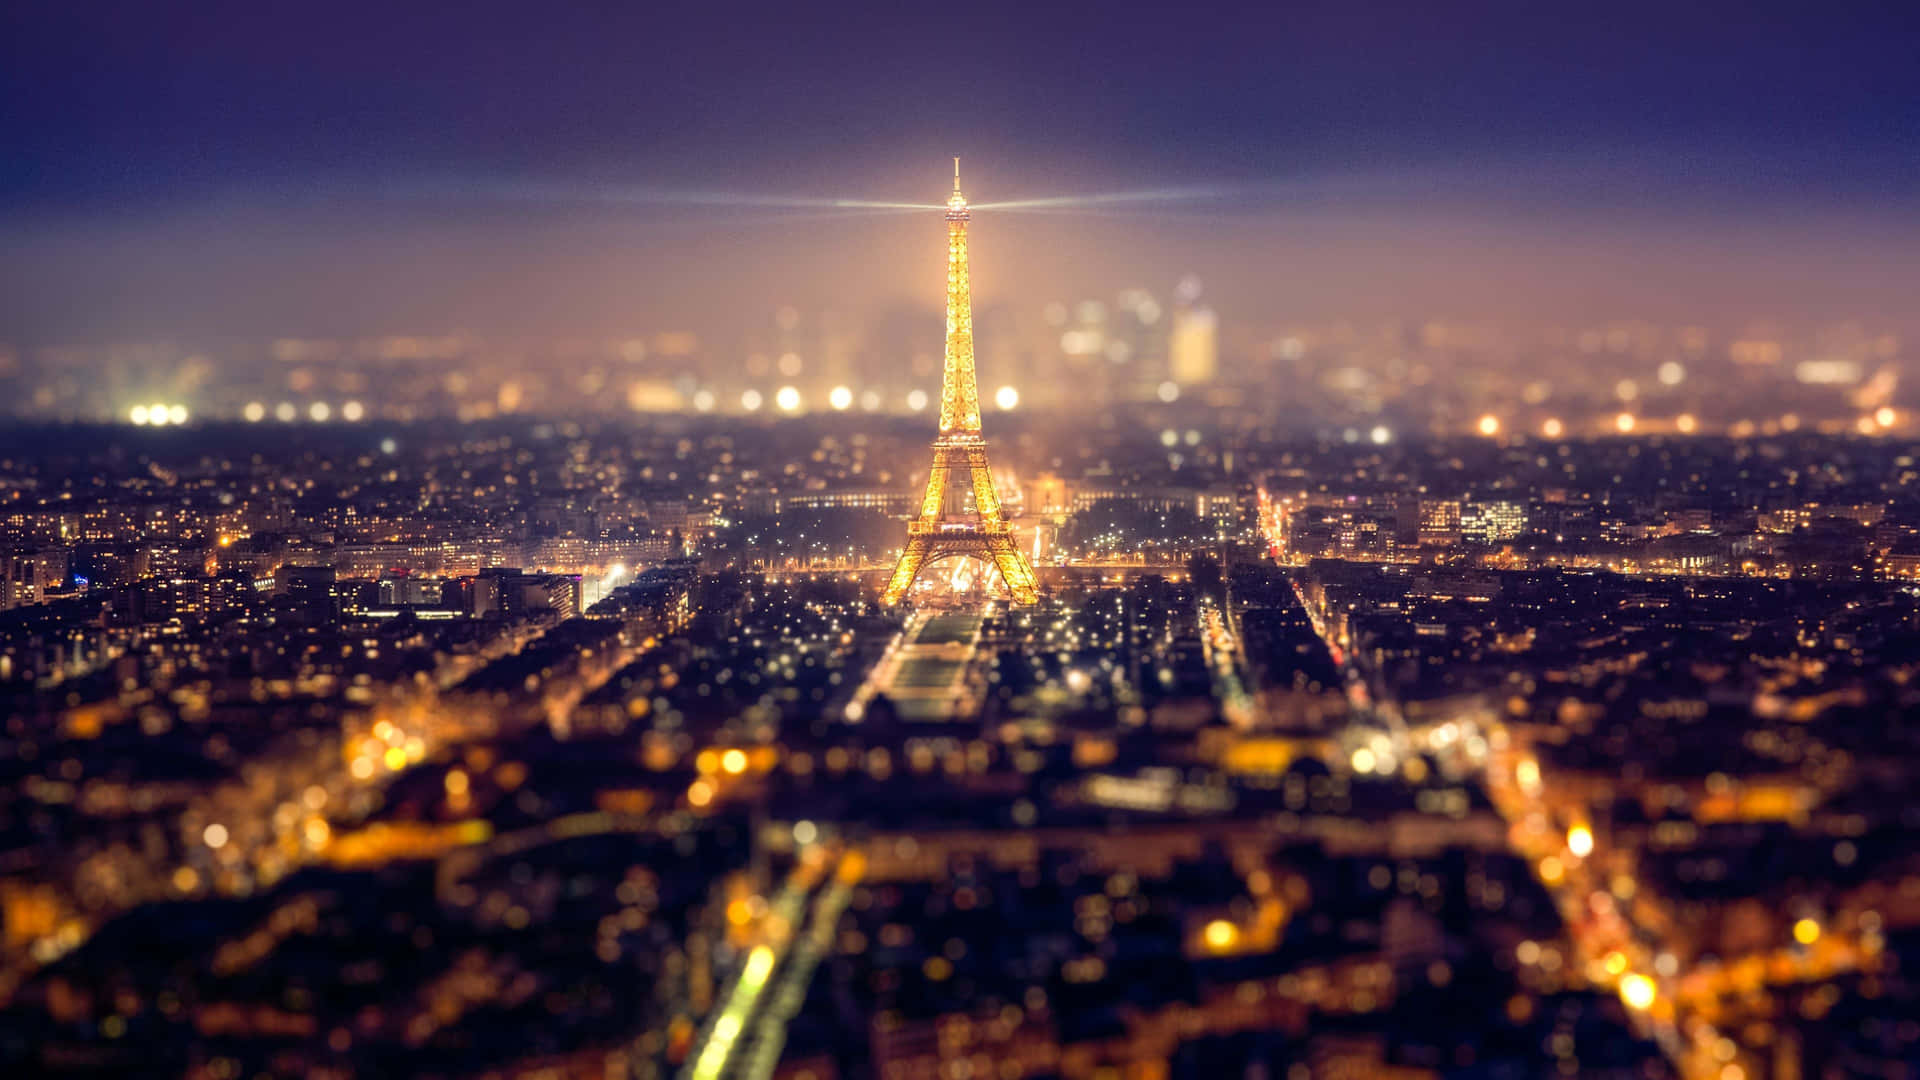 Imagentorre Eiffel Iluminada En París De Noche. Fondo de pantalla